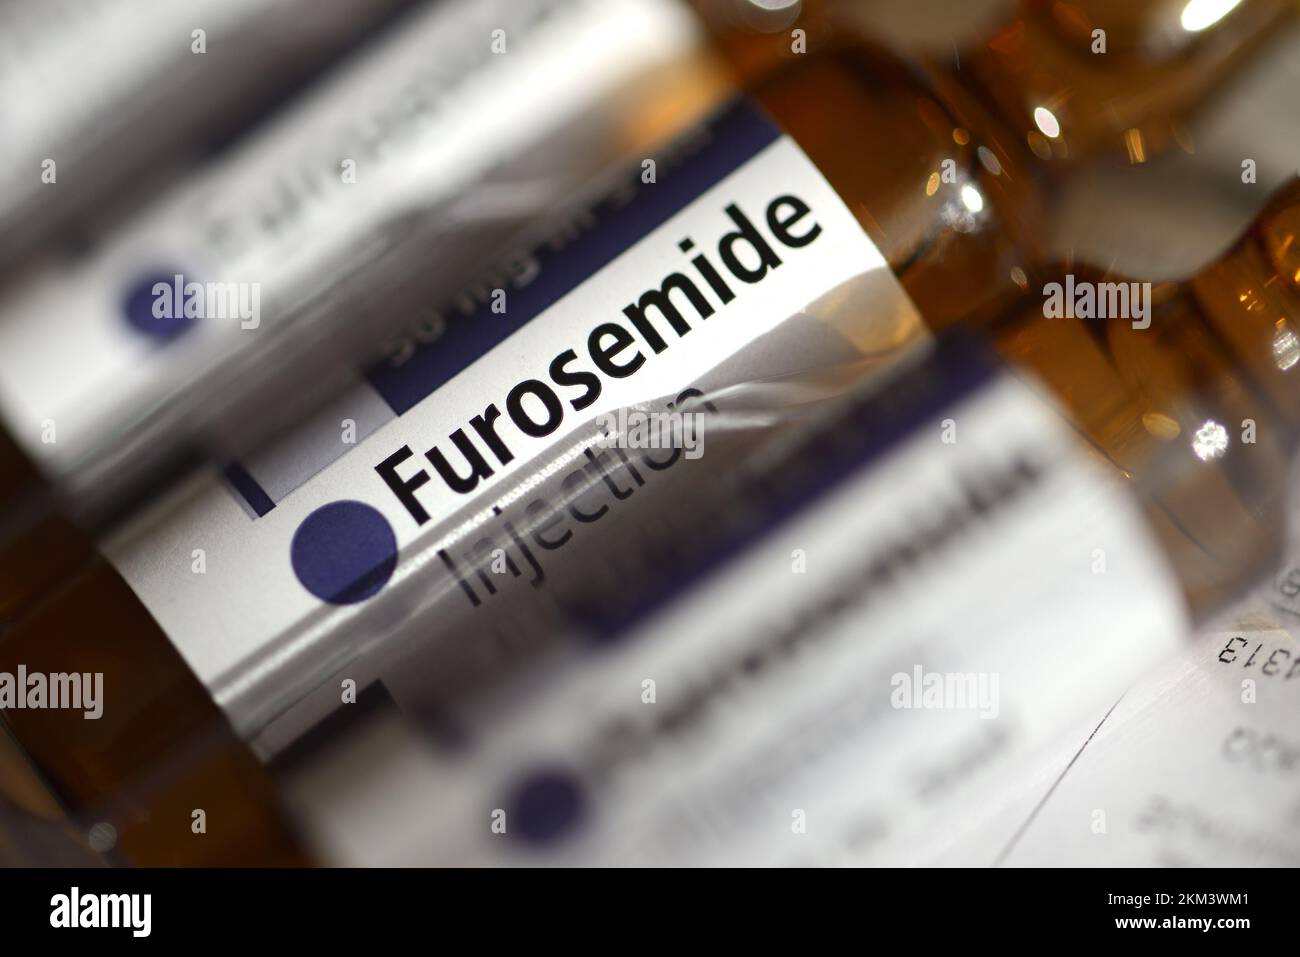 Furosemide - medicinale per il trattamento della pressione alta e dell'edema. fiale da 50 mg del farmaco liquido per iniezione o per somministrazione endovenosa Foto Stock